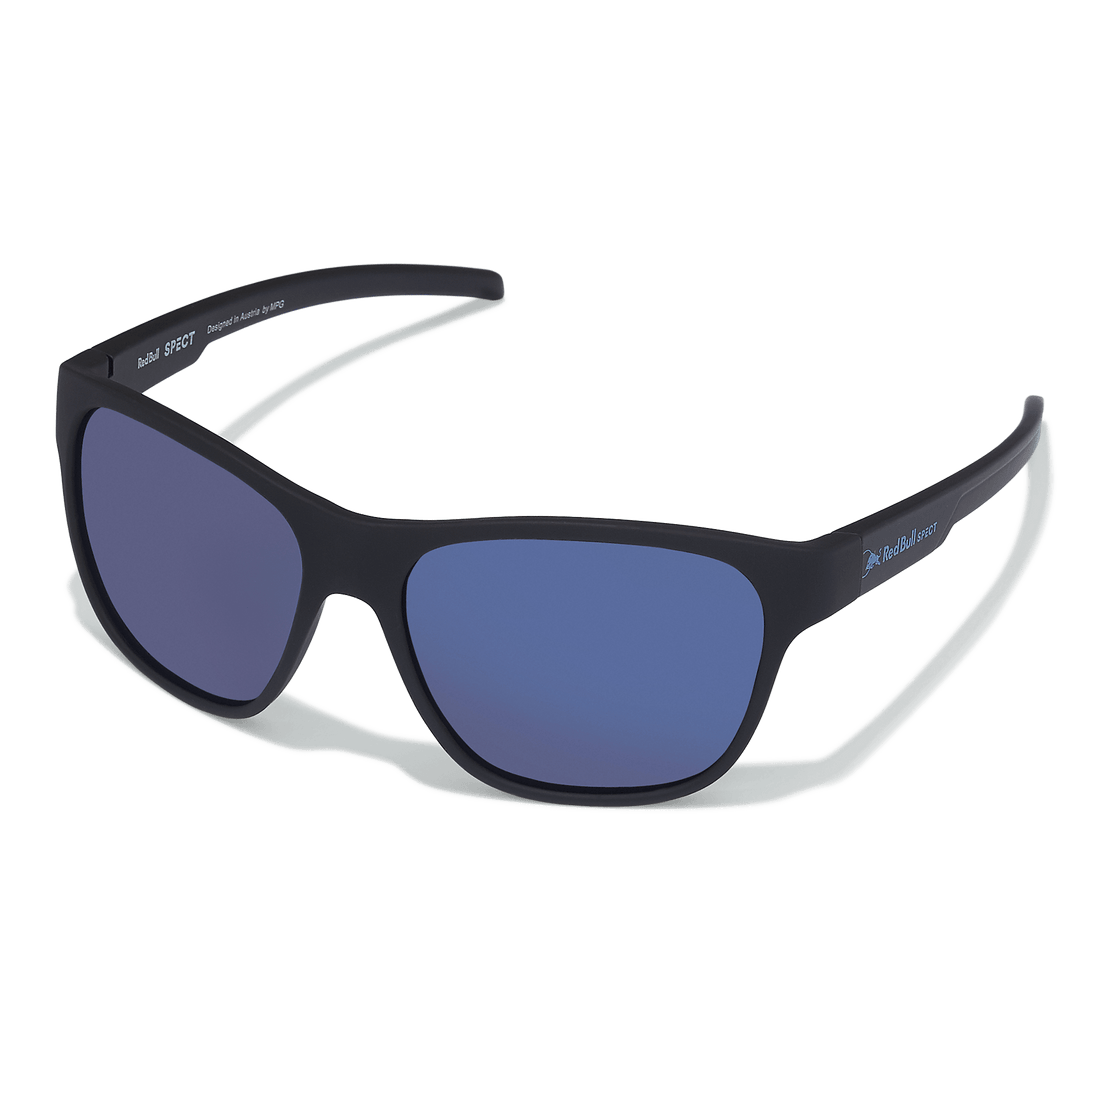 Red Bull SPECT Sonic Sunglasses